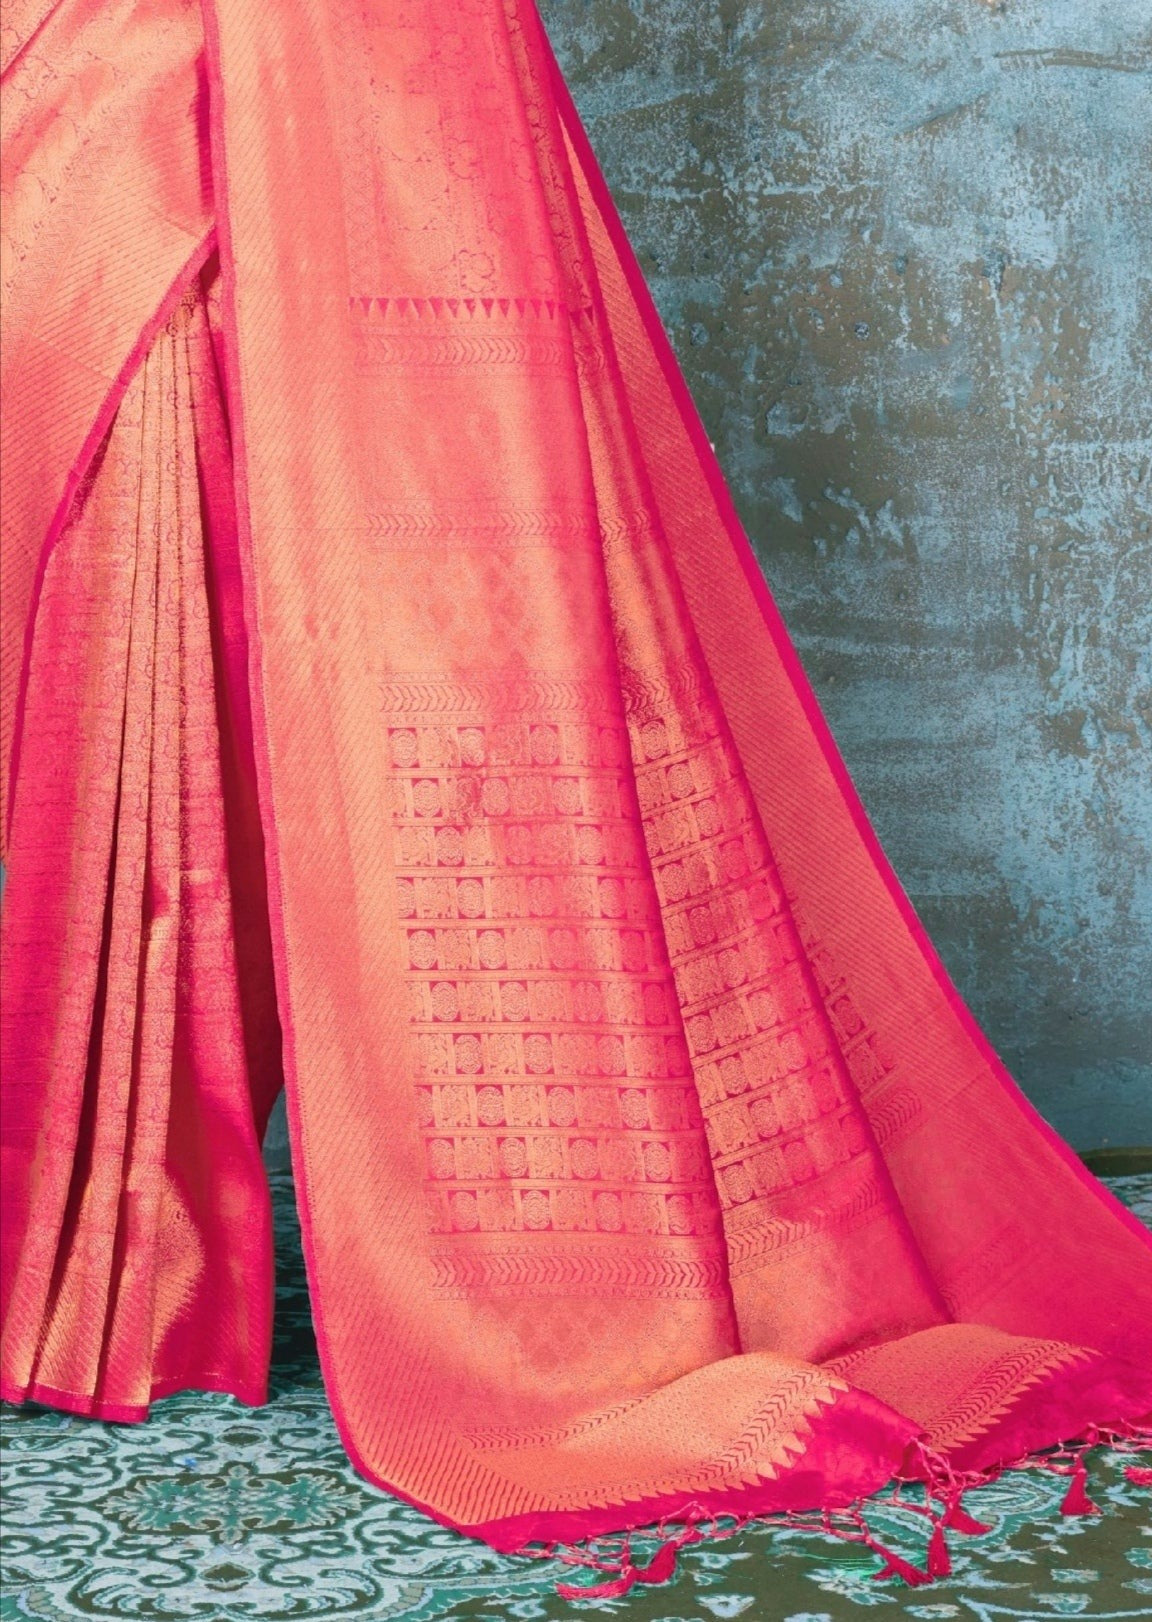 Royal Look Raspberry Pink Kanjivaram Silk Saree